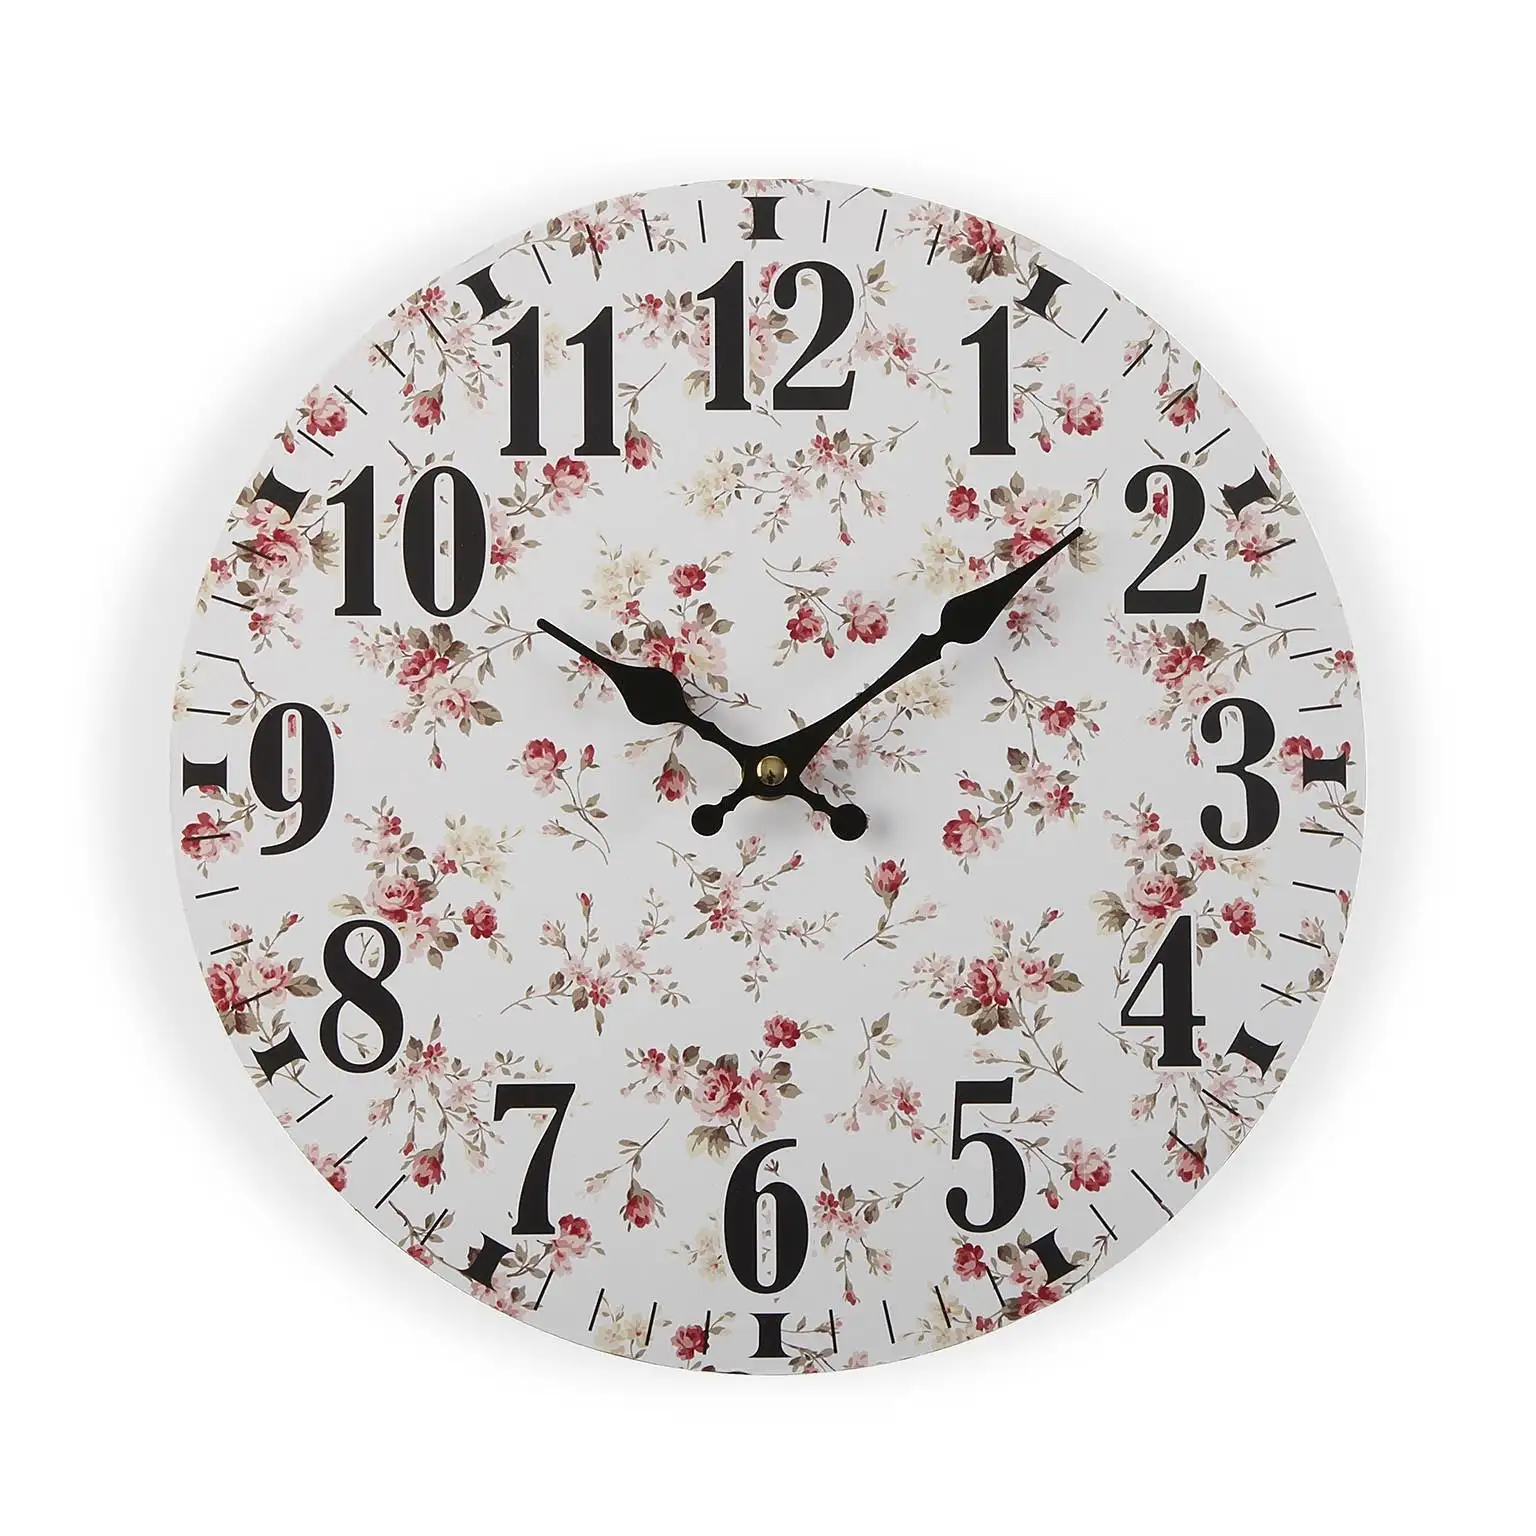 Horloge murale versa maggie bois 4 x 29 x 29 cm_6734. DIAYTAR SENEGAL - Votre Portail Vers l'Exclusivité. Explorez notre boutique en ligne pour trouver des produits uniques et exclusifs, conçus pour les amateurs de qualité.